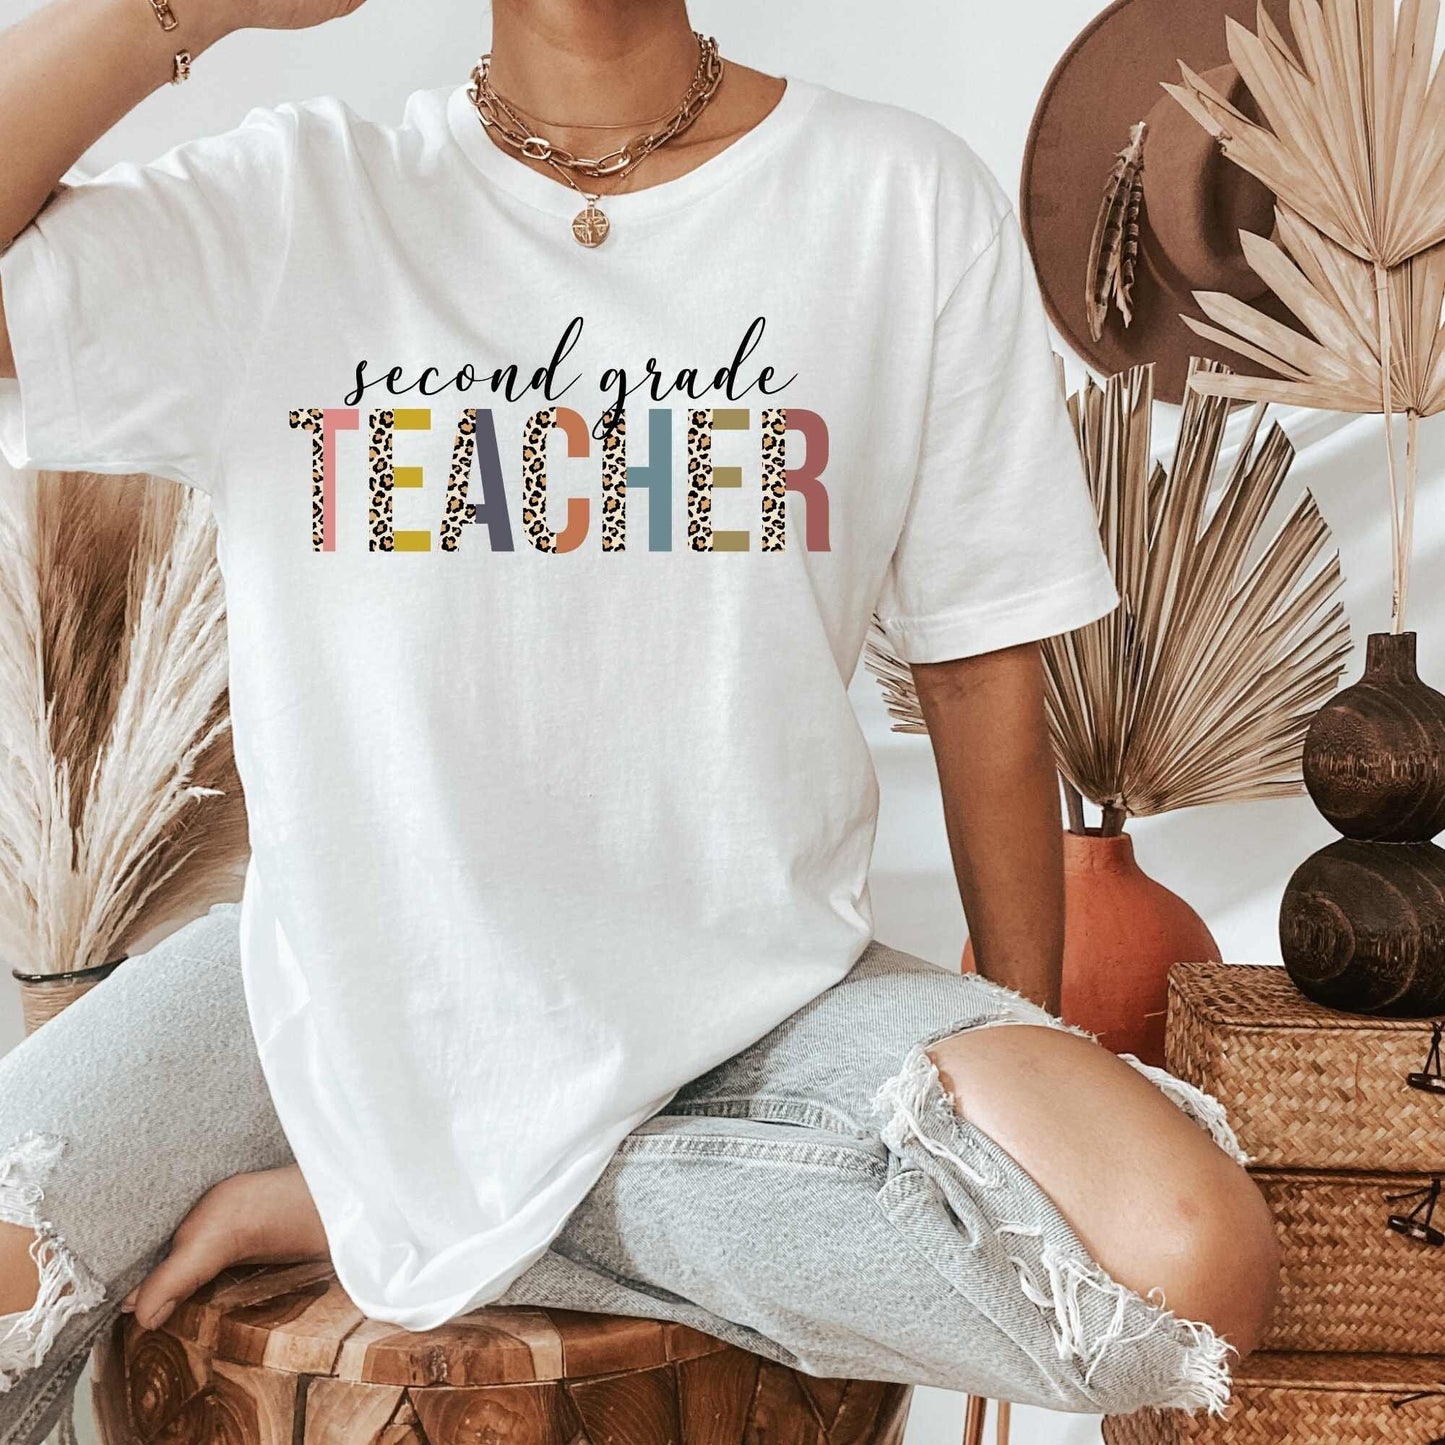 2nd Grade Teacher Shirt HMDesignStudioUS